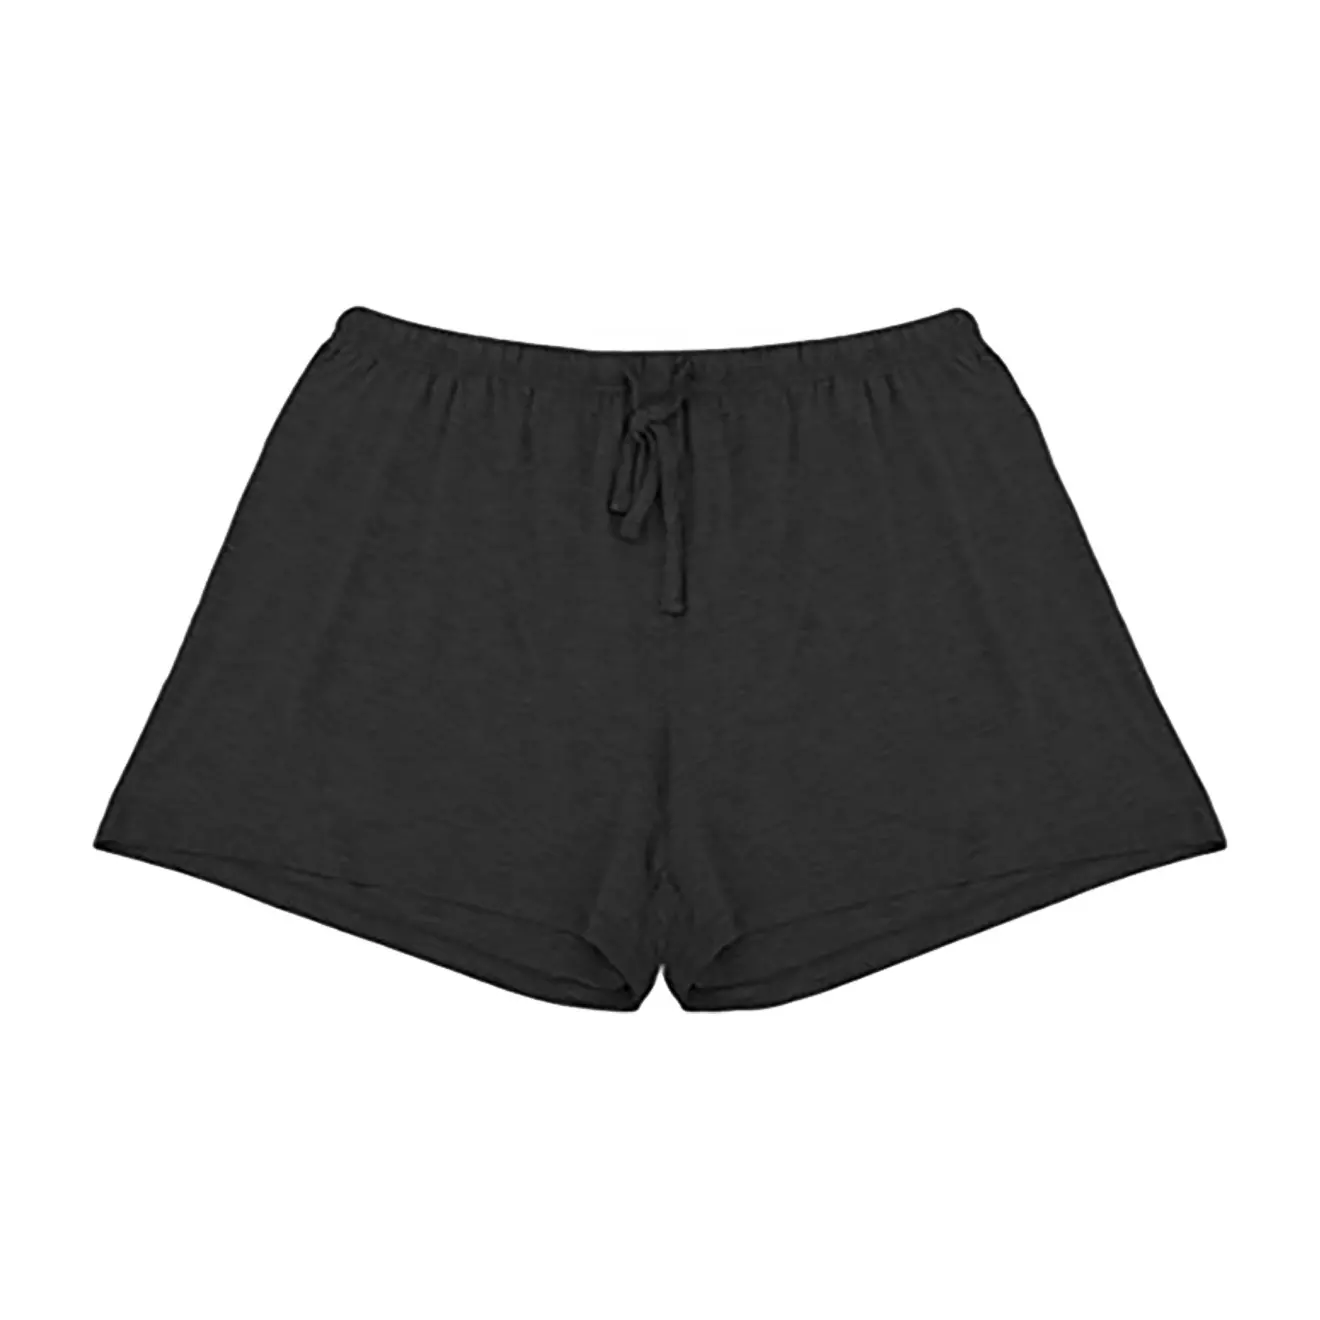 Pantalones cortos de Entrenamiento Personalizados para mujer, Shorts informales lisos holgados de algodón suave sólido para verano